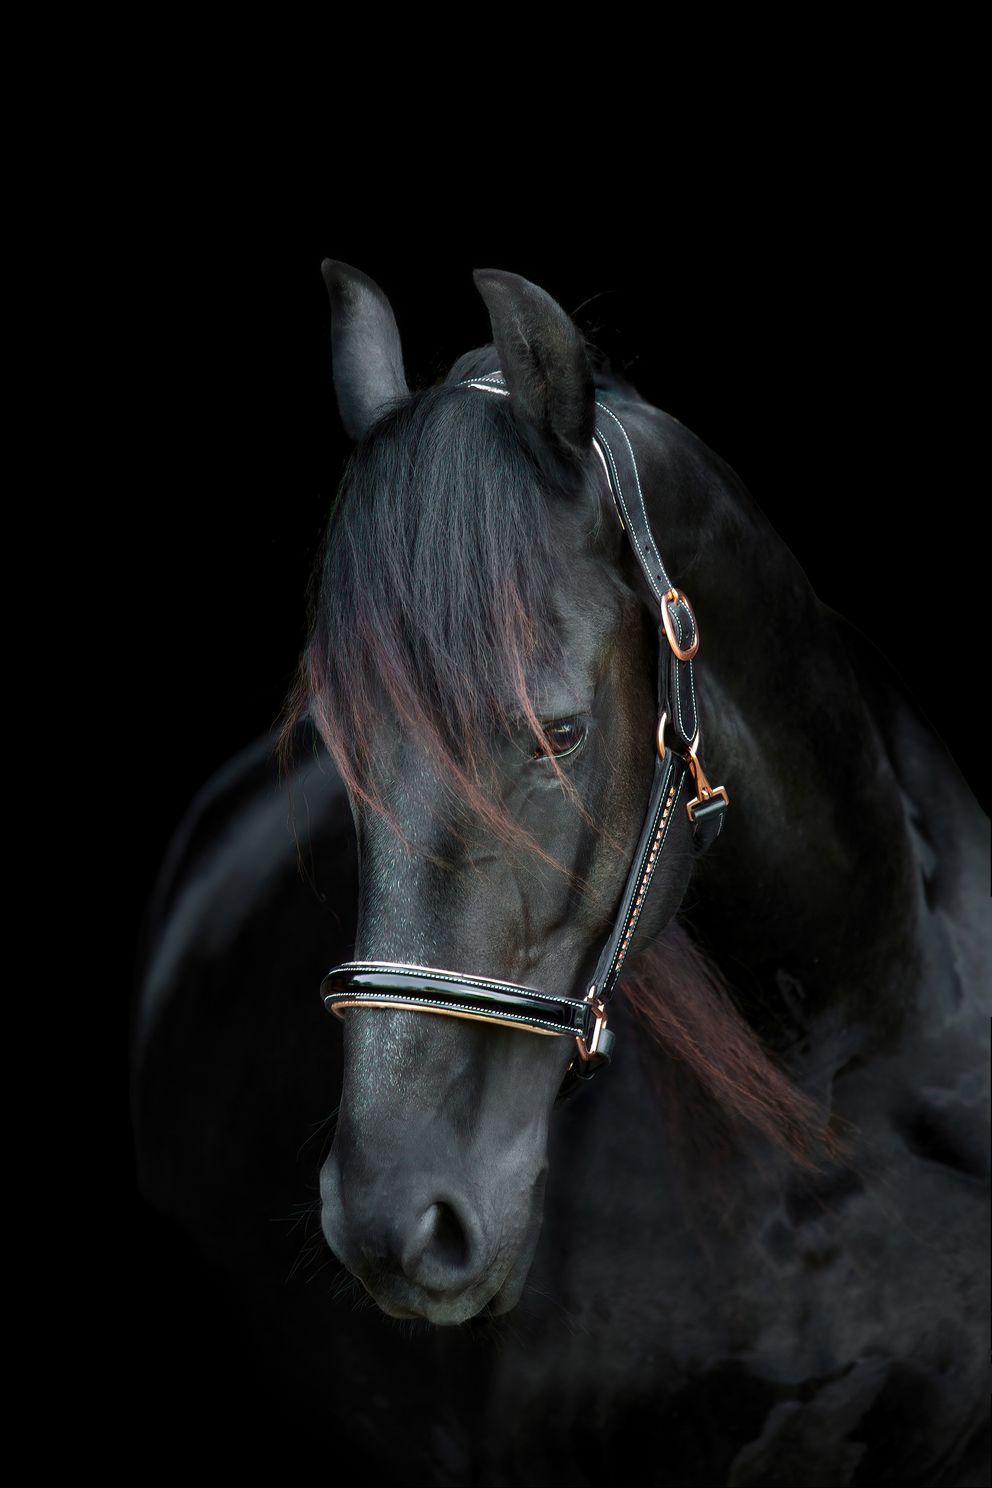 fresian-horse-on-black-background.jpg 1